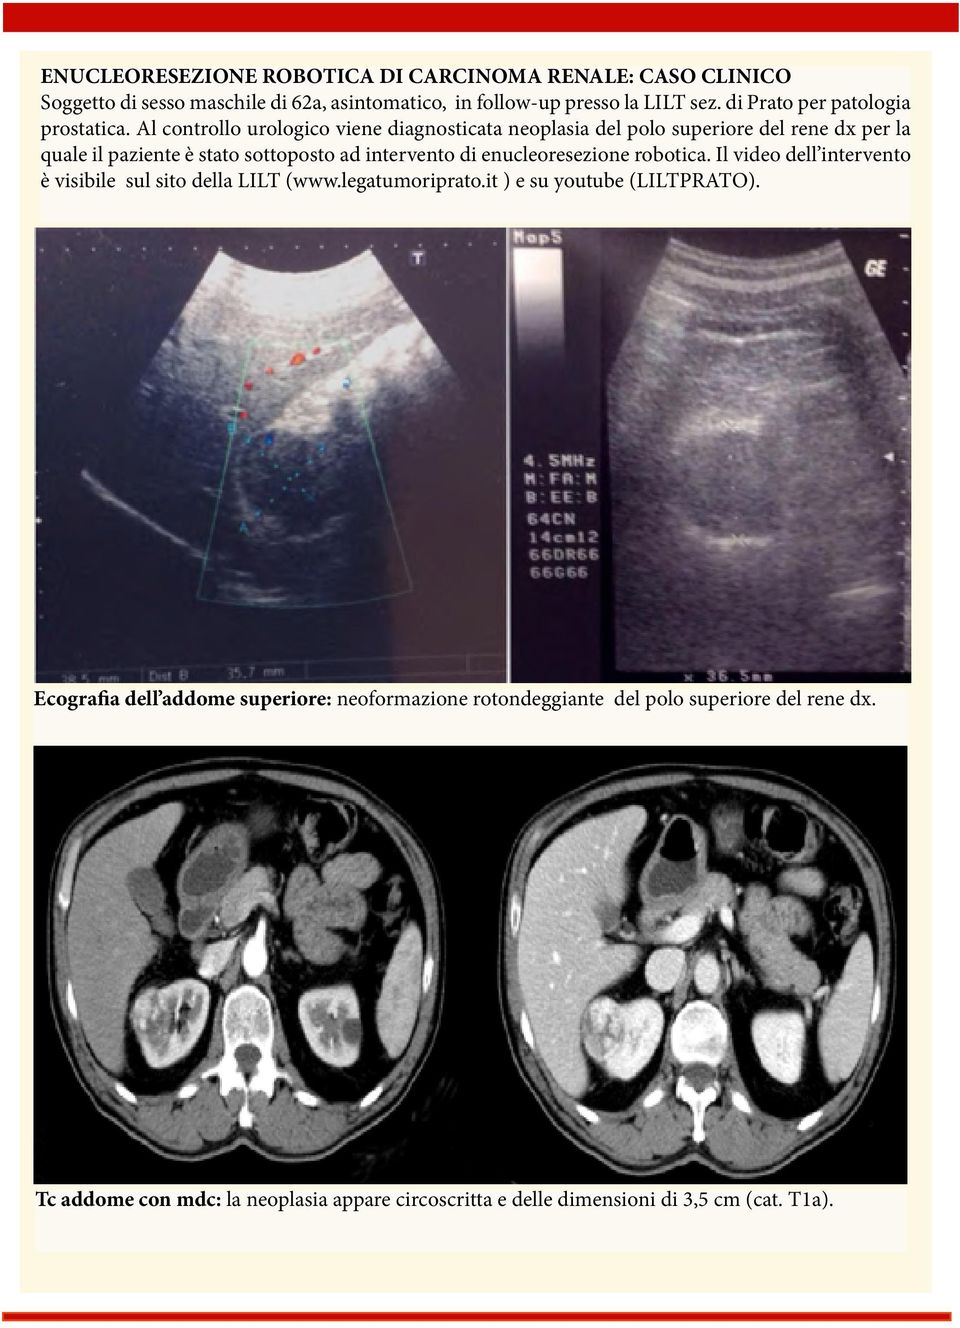 Al controllo urologico viene diagnosticata neoplasia del polo superiore del rene dx per la quale il paziente è stato sottoposto ad intervento di